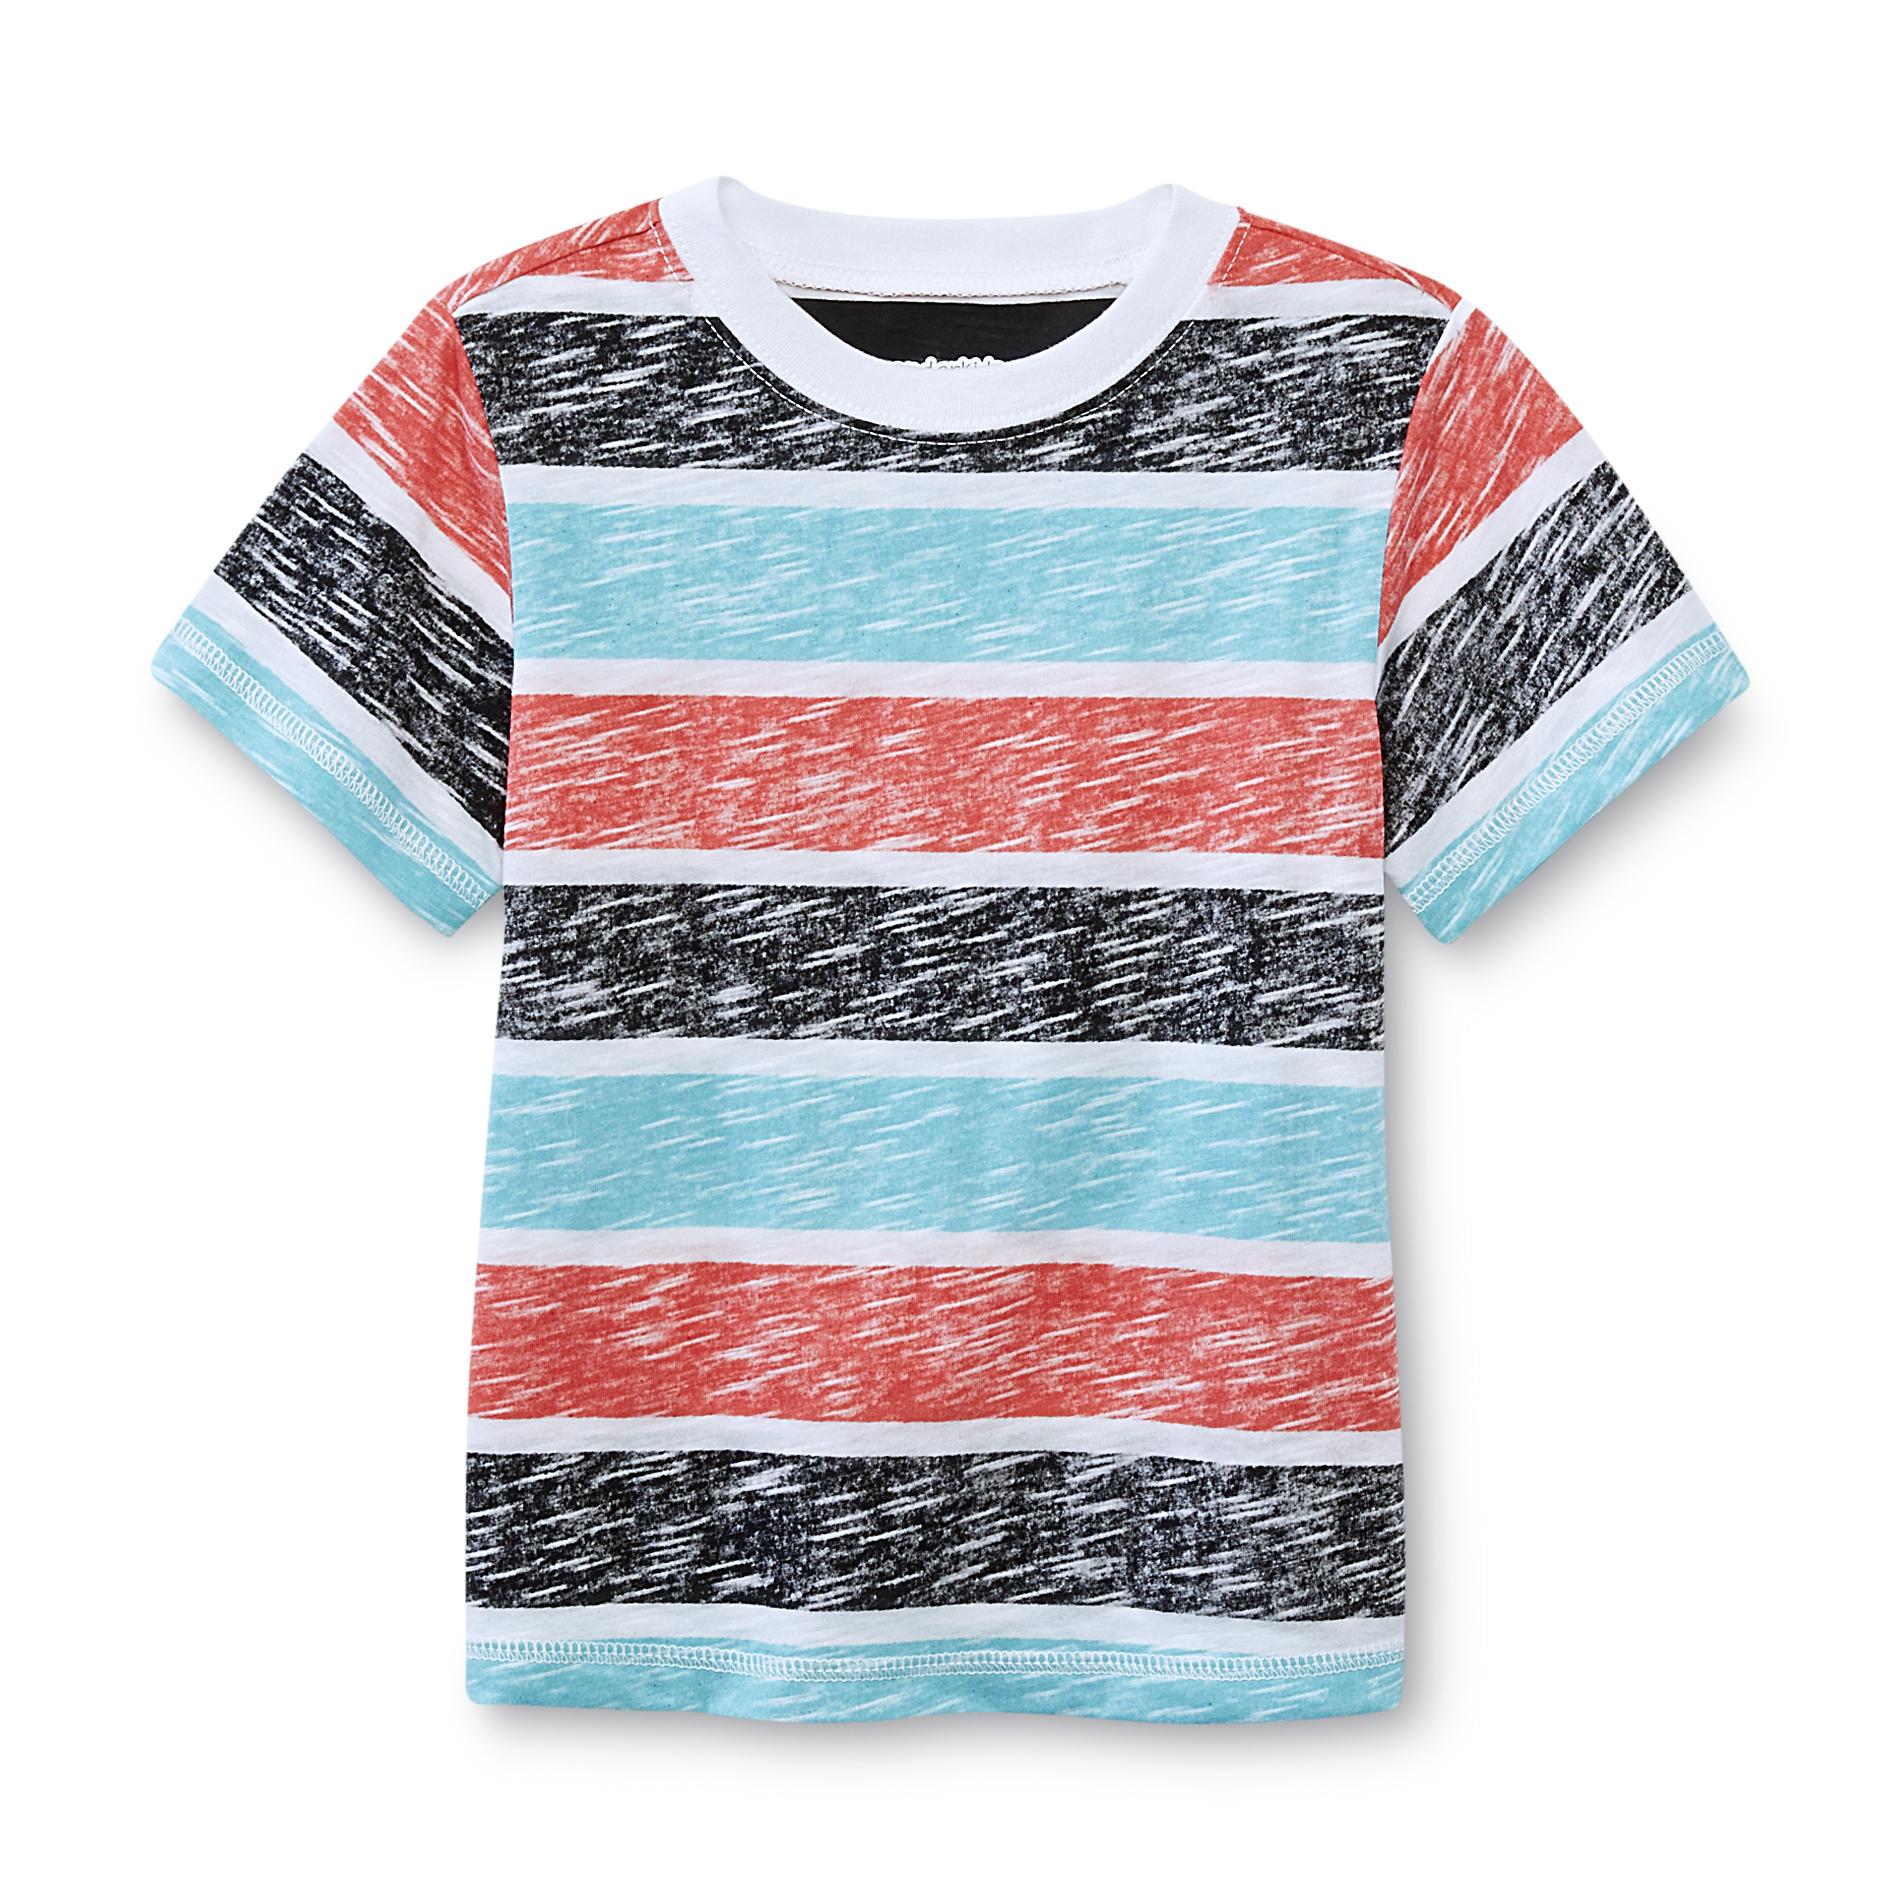 WonderKids Infant & Toddler Boy's T-Shirt - Chalkboard Stripes